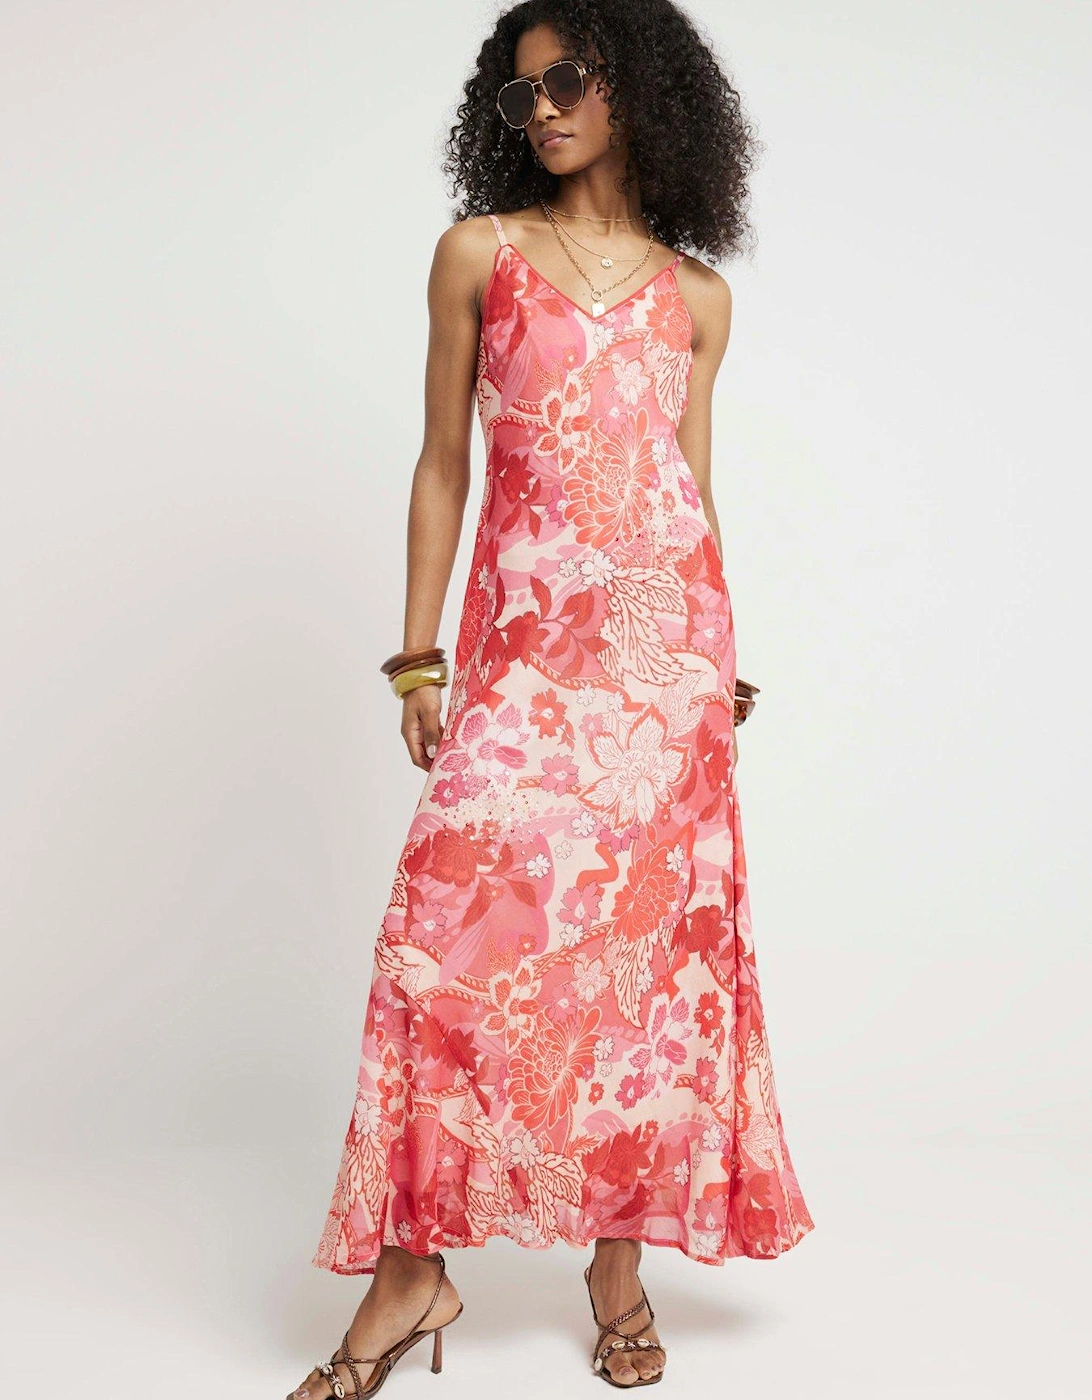 Floral Embellished Slip Dress - Pink, 2 of 1